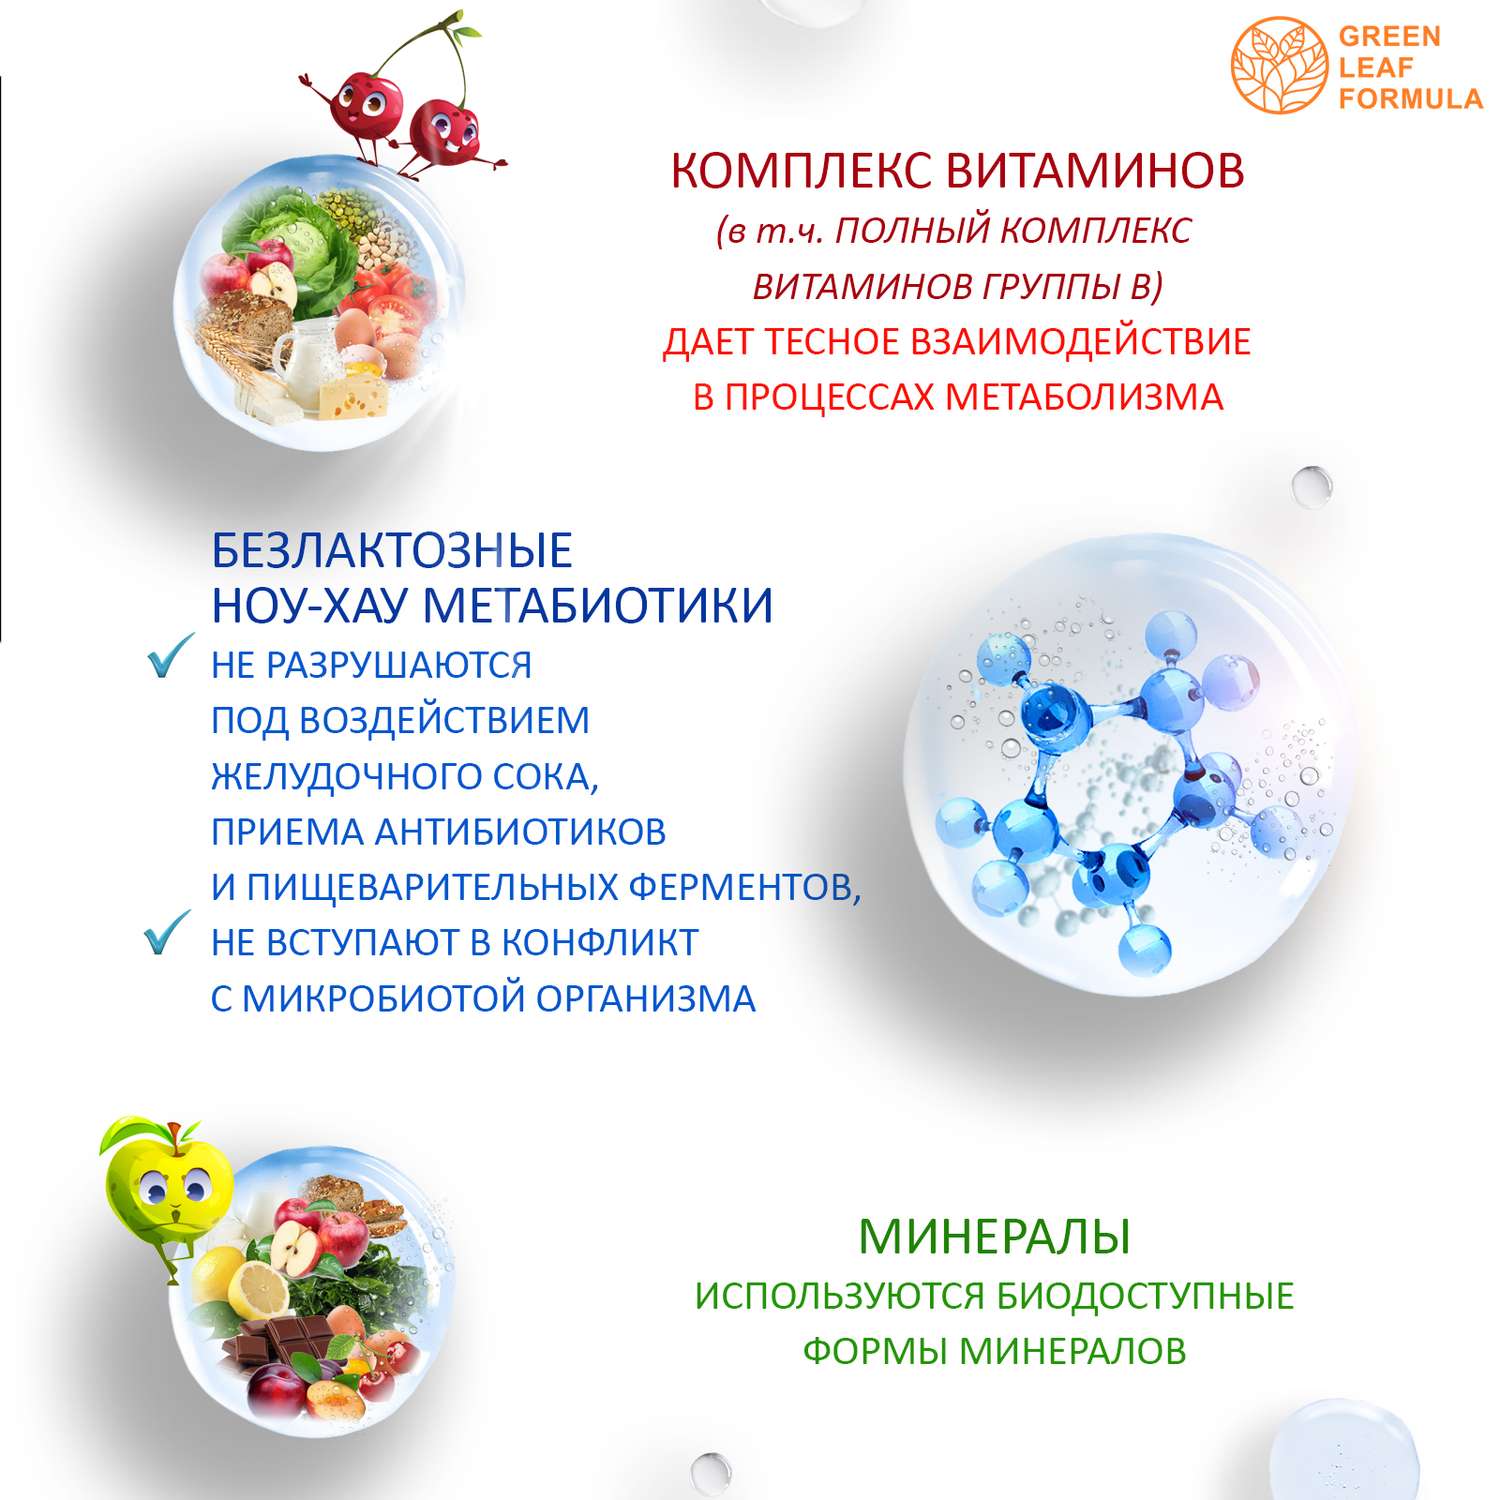 Детская омега 3 и метабиотики Green Leaf Formula для кишечника витаминный комплекс для иммунитета 120 шт - фото 12